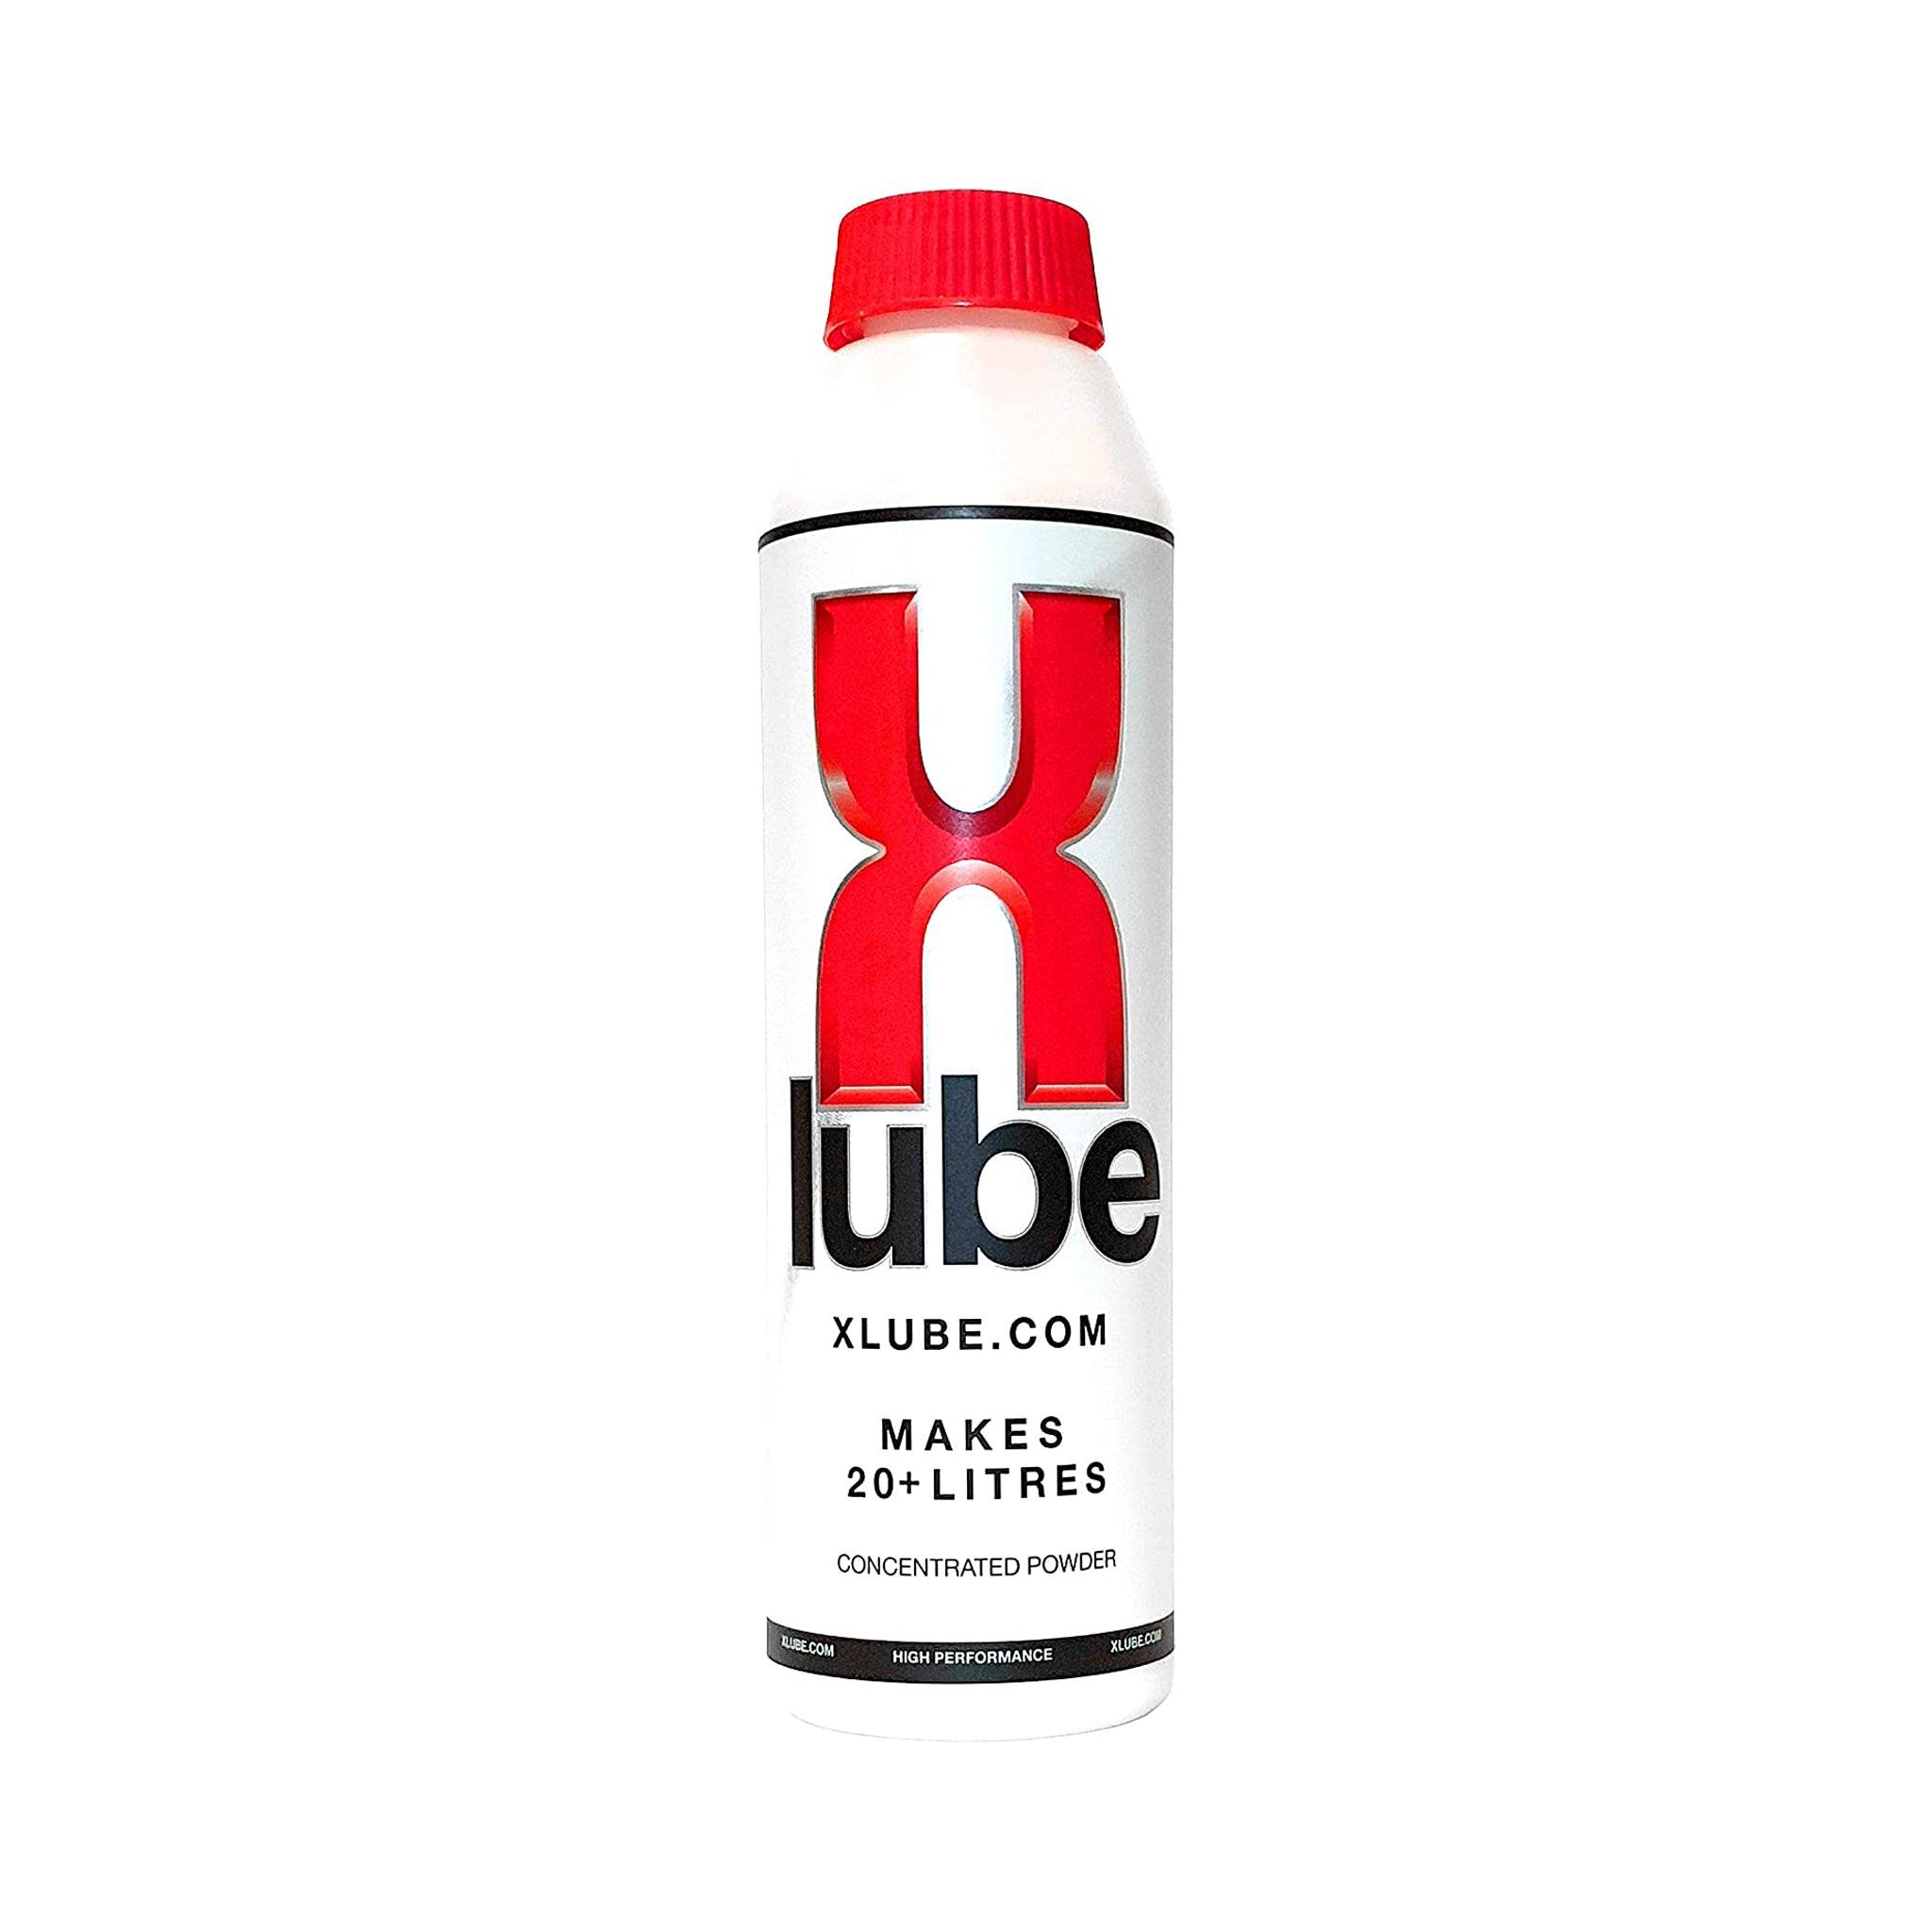 J-Lube Powder, 10 oz